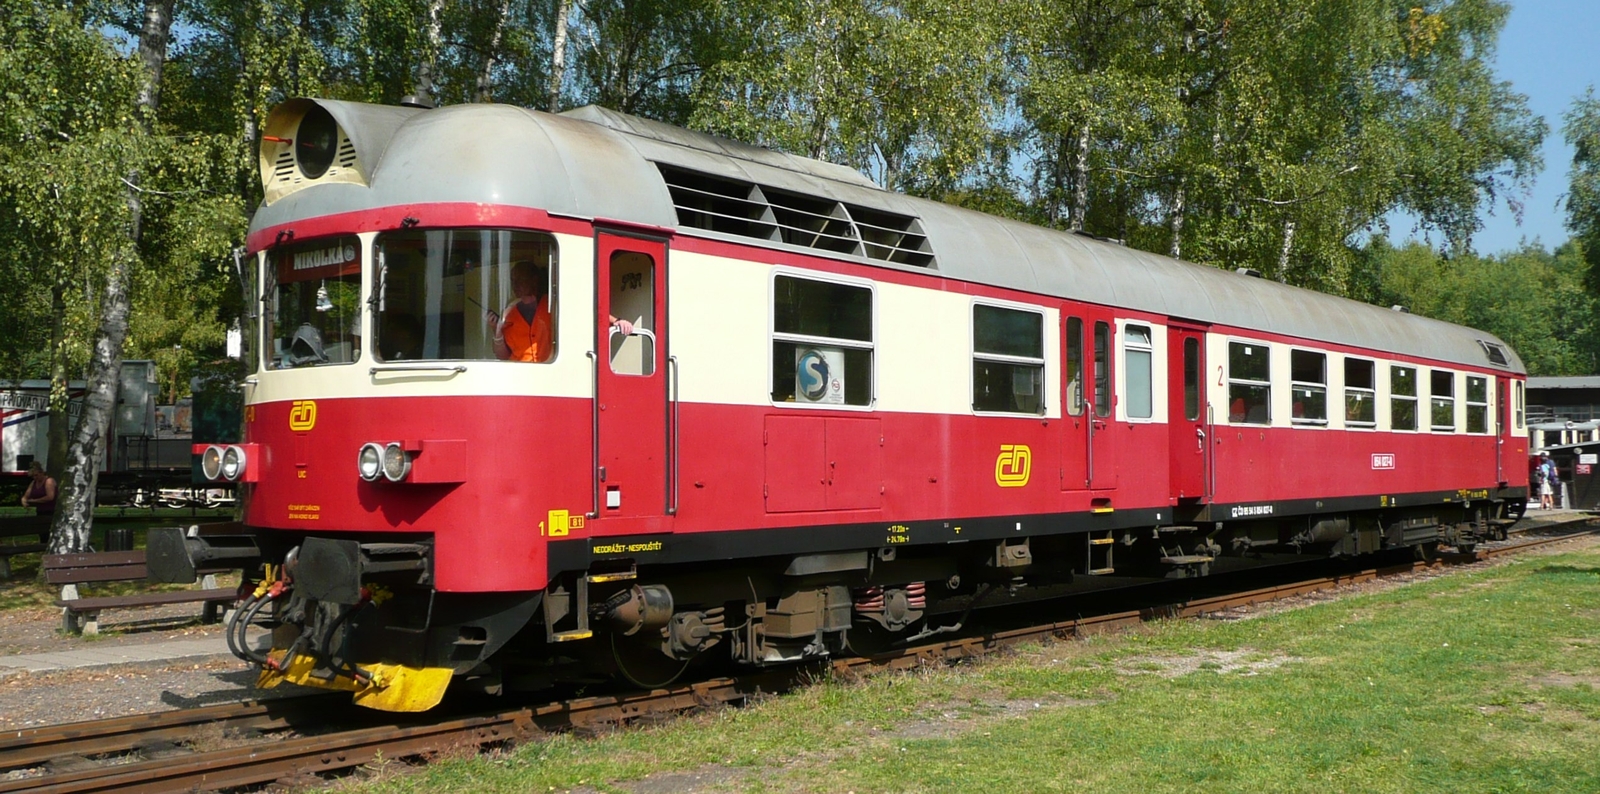 Class 854 in original livery